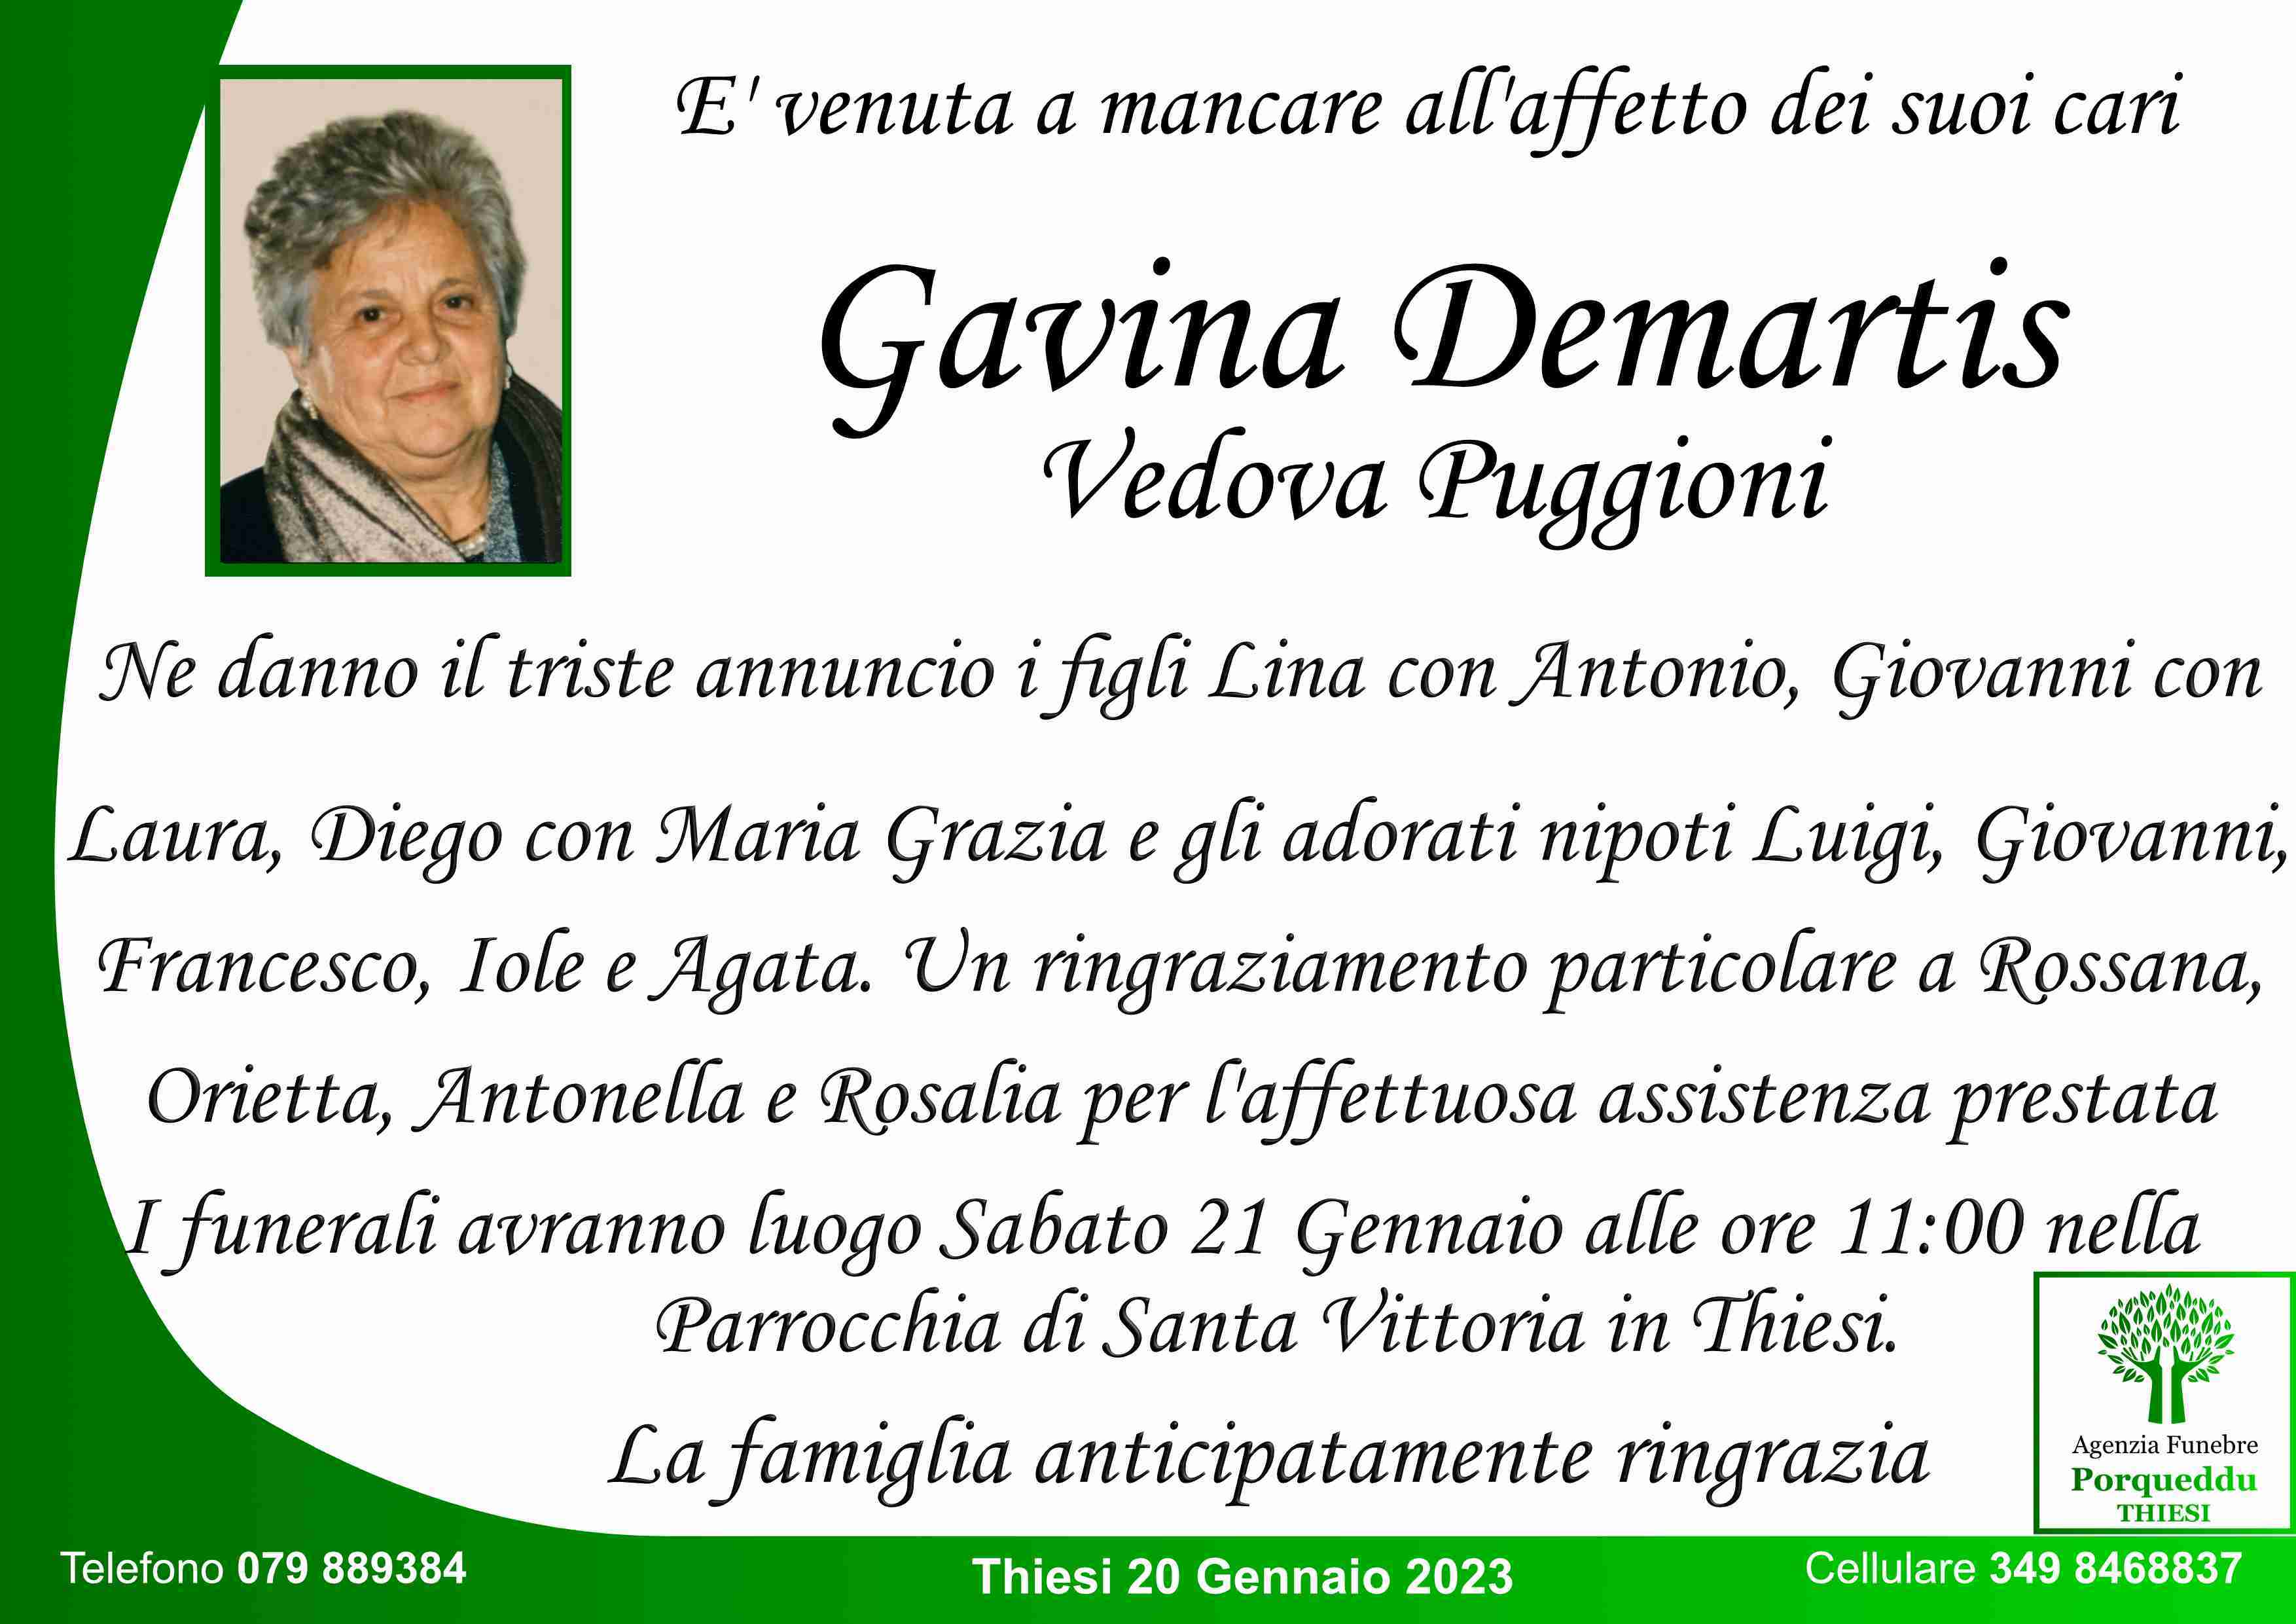 Gavina Demartis